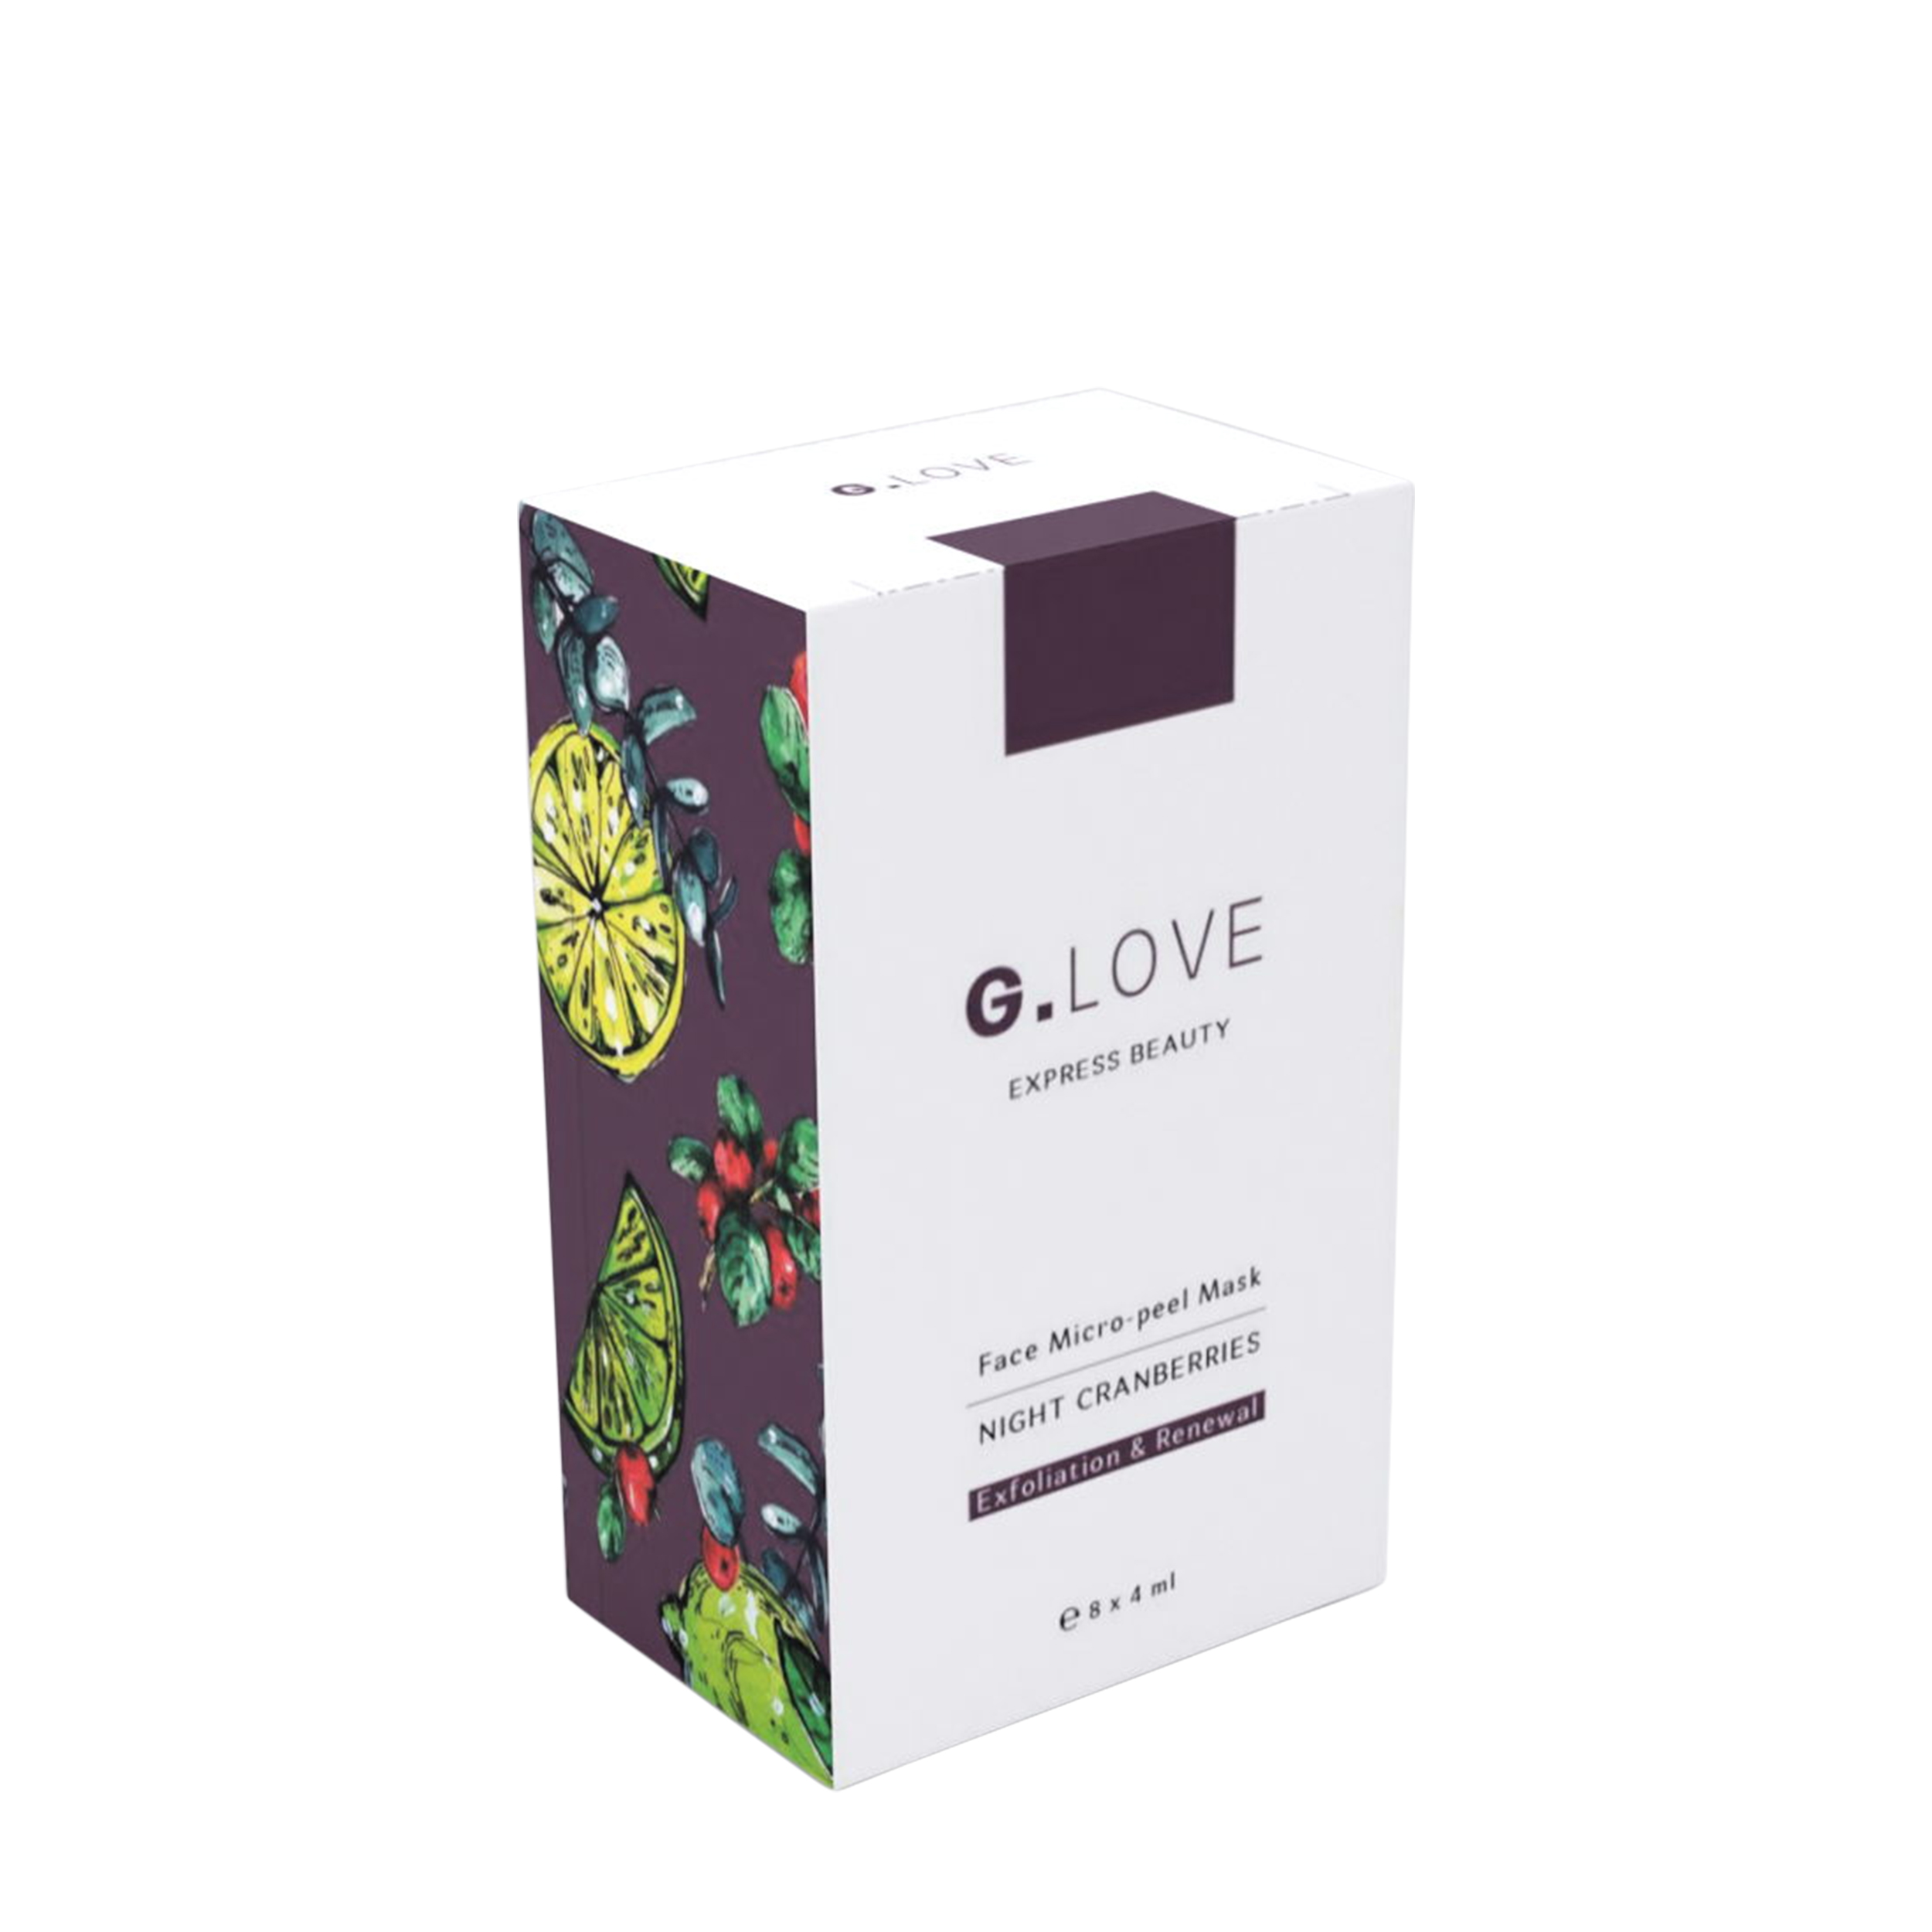 G.LOVE G.LOVE Ночная отшелушивающая маска для лица с кислотами Night Cranberries от Foambox